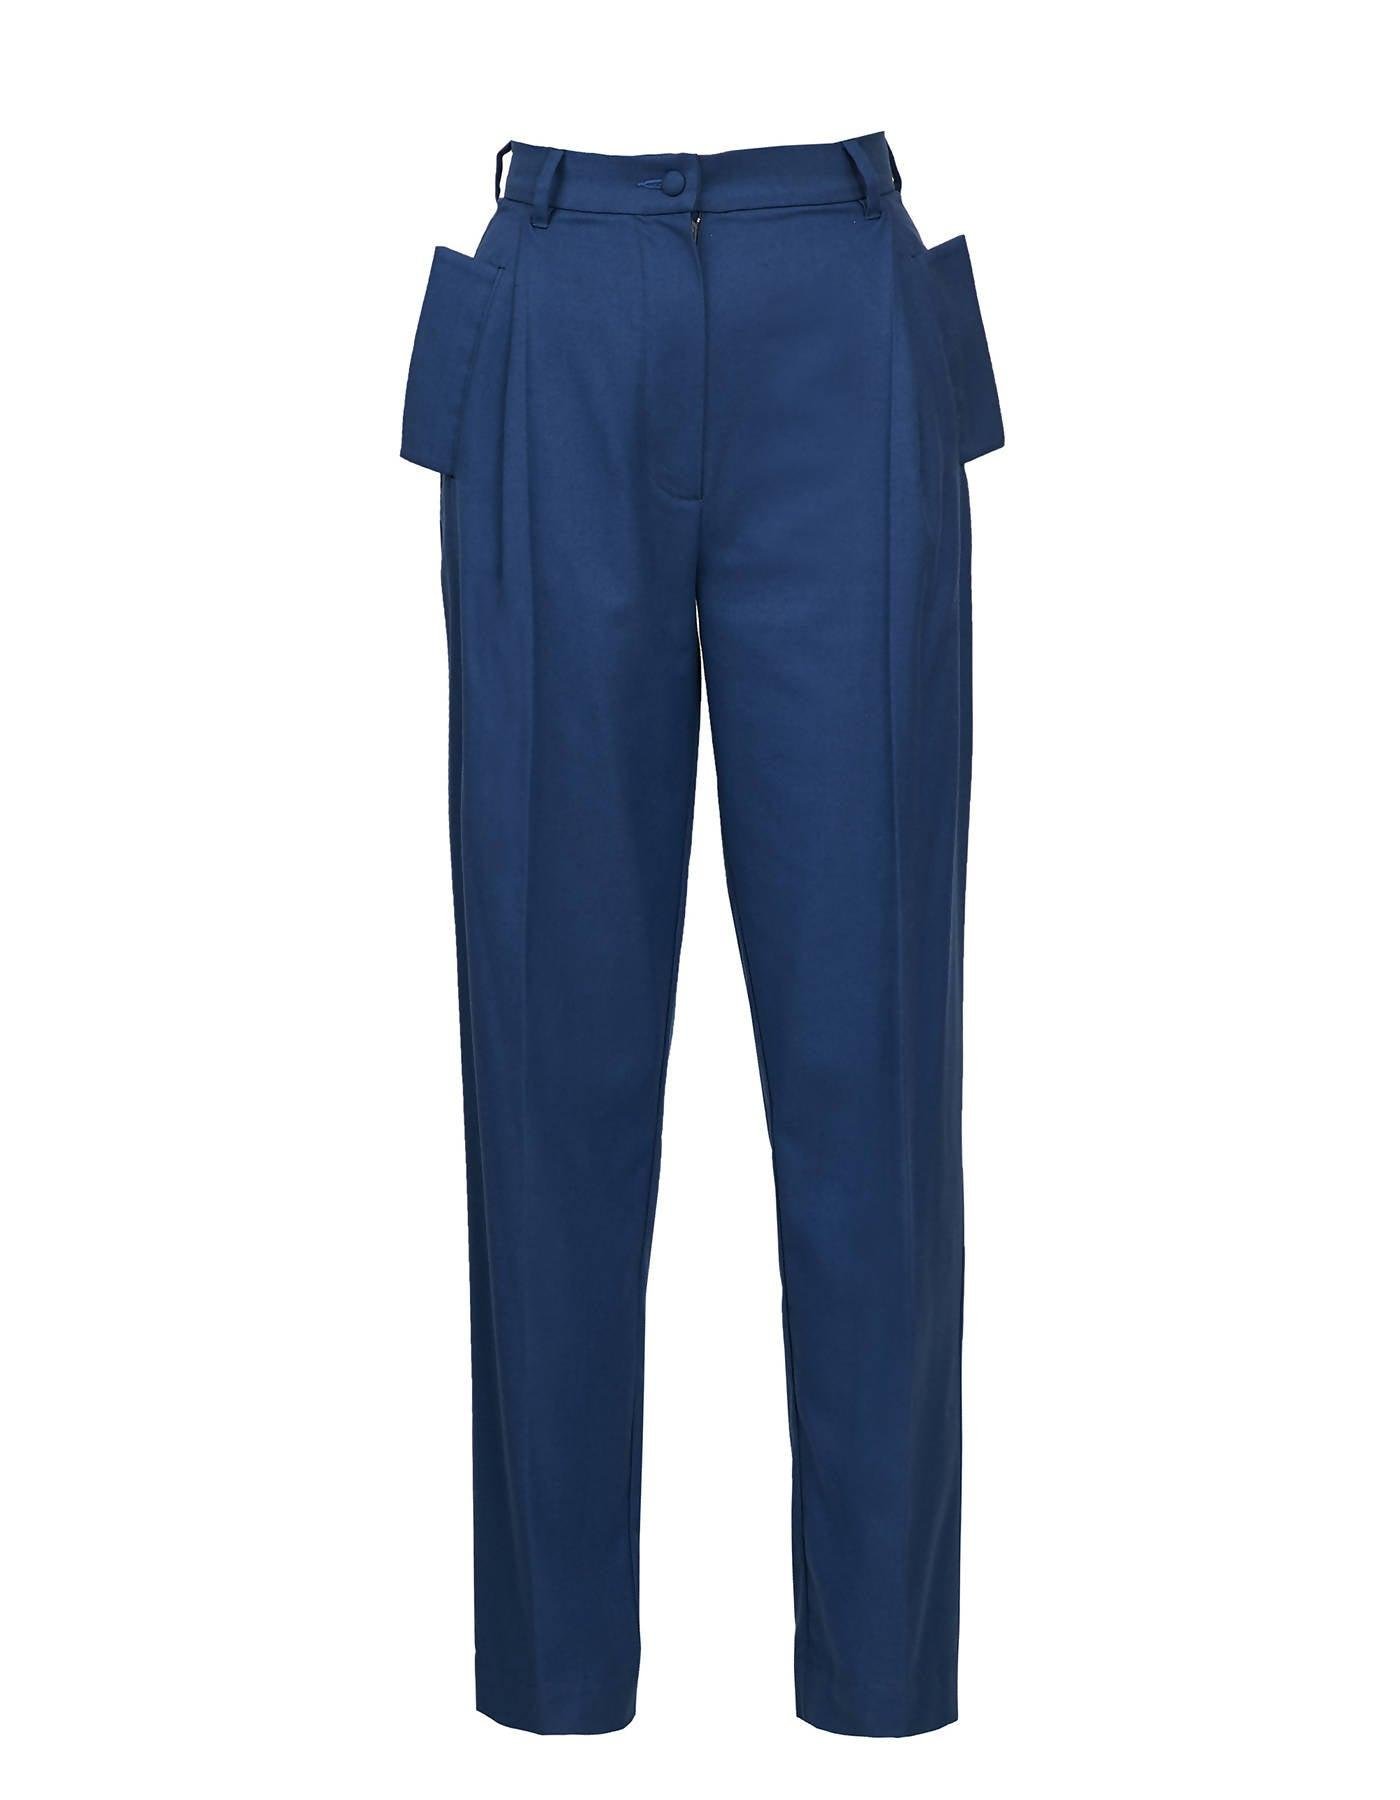 Classic Blue Suit Pants by BLIKVANGER